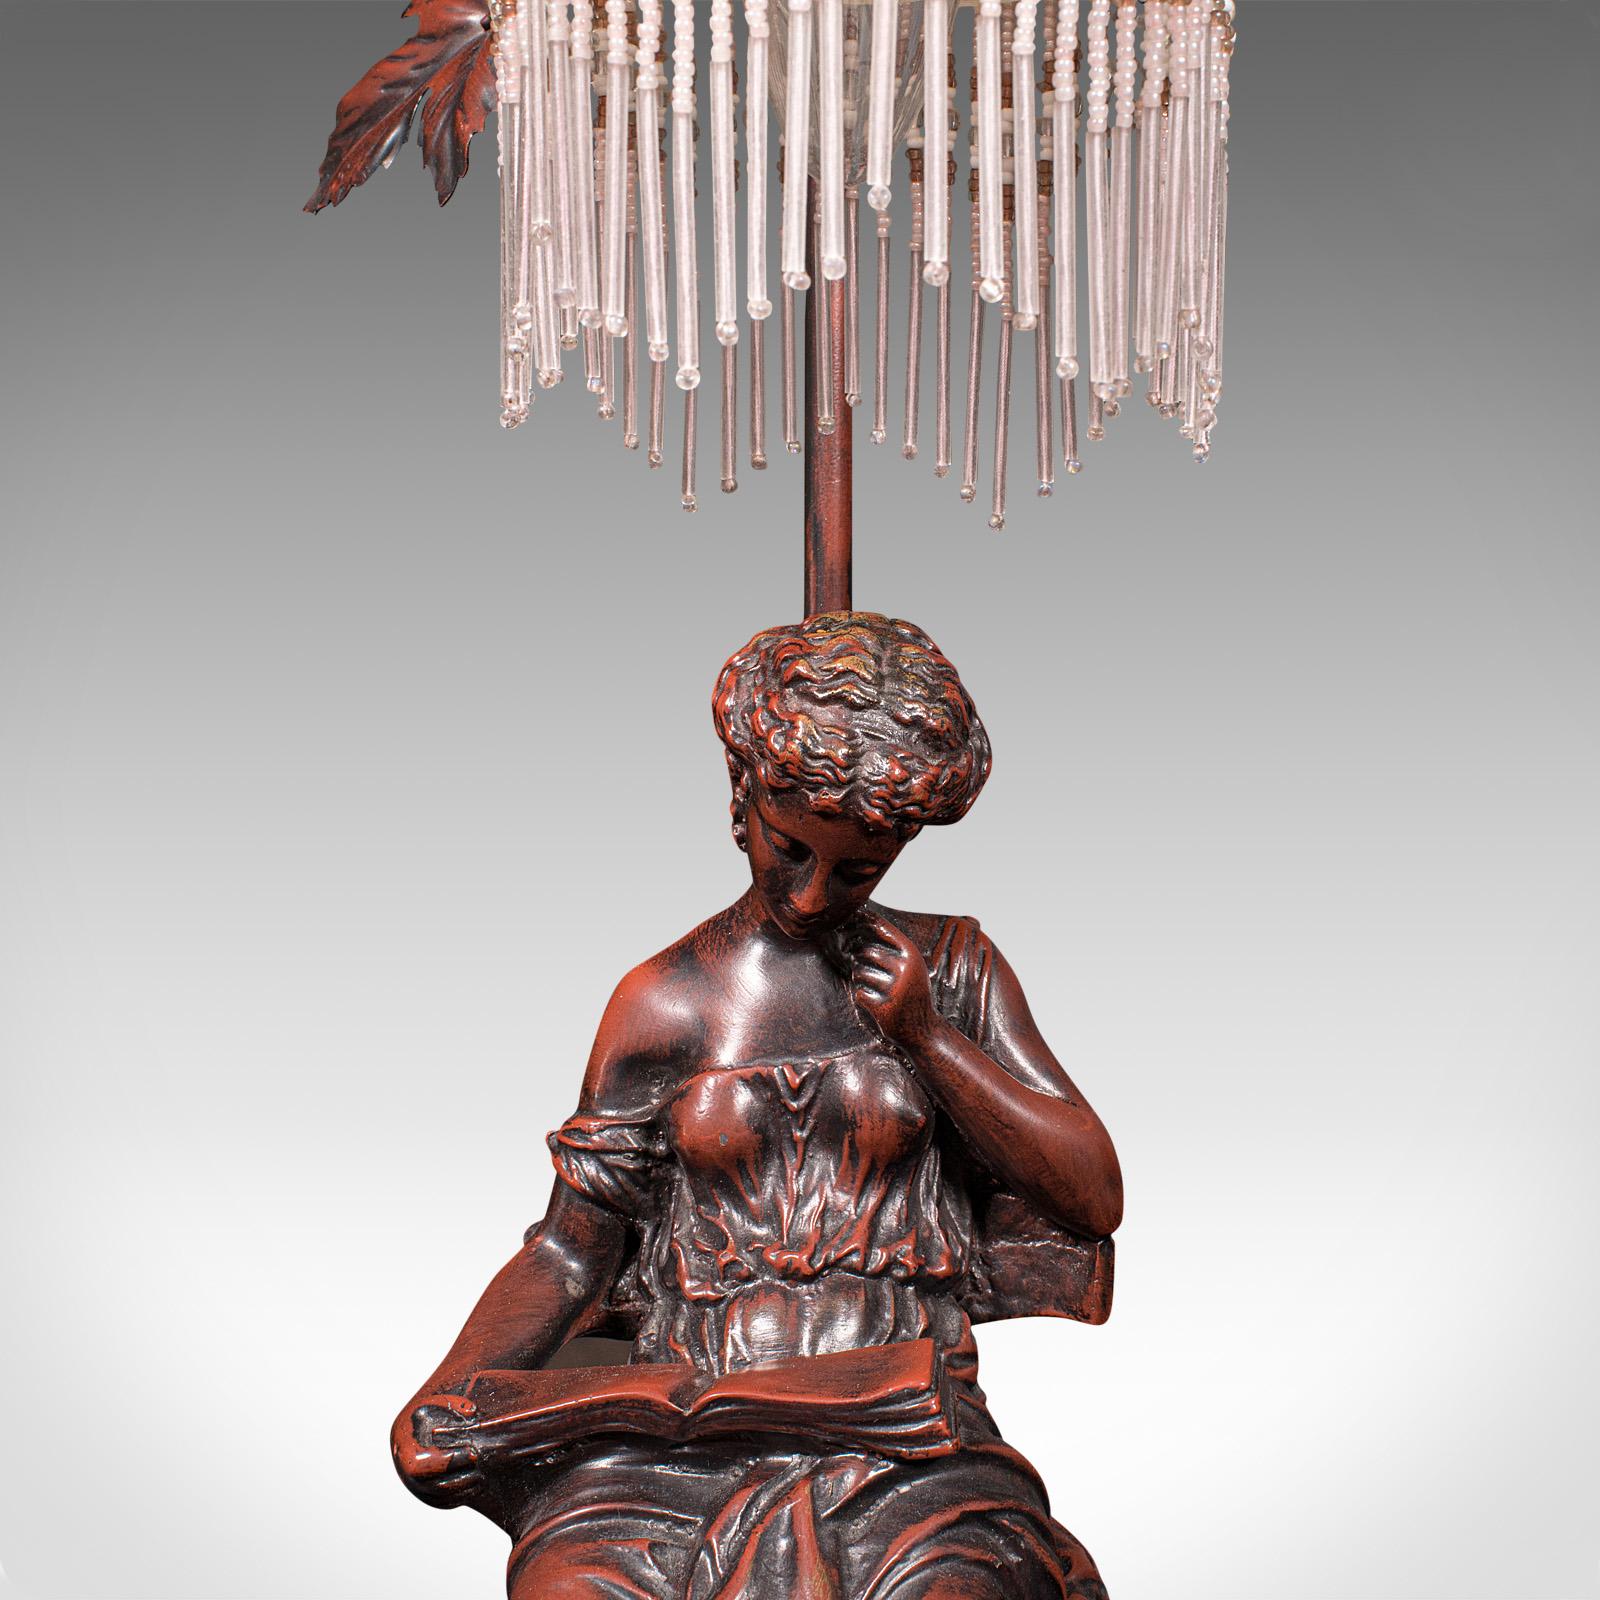 Vintage Decorative Lamp, French, Bronzed, Figural Light, Art Nouveau Revival For Sale 2